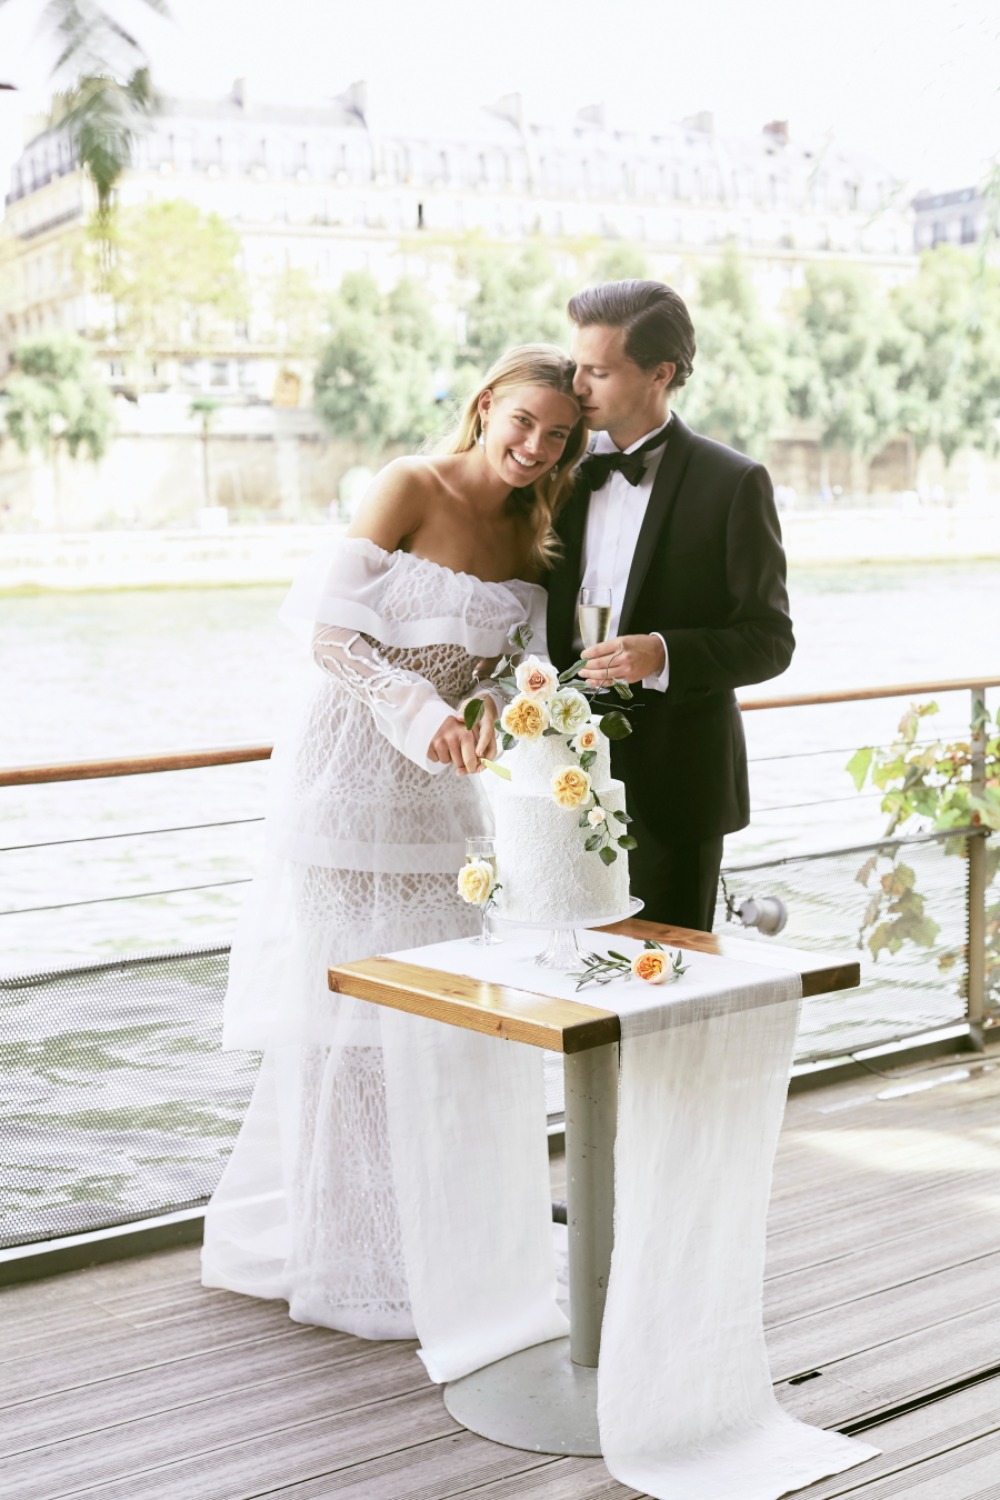 Romantic wedding inspo in Paris